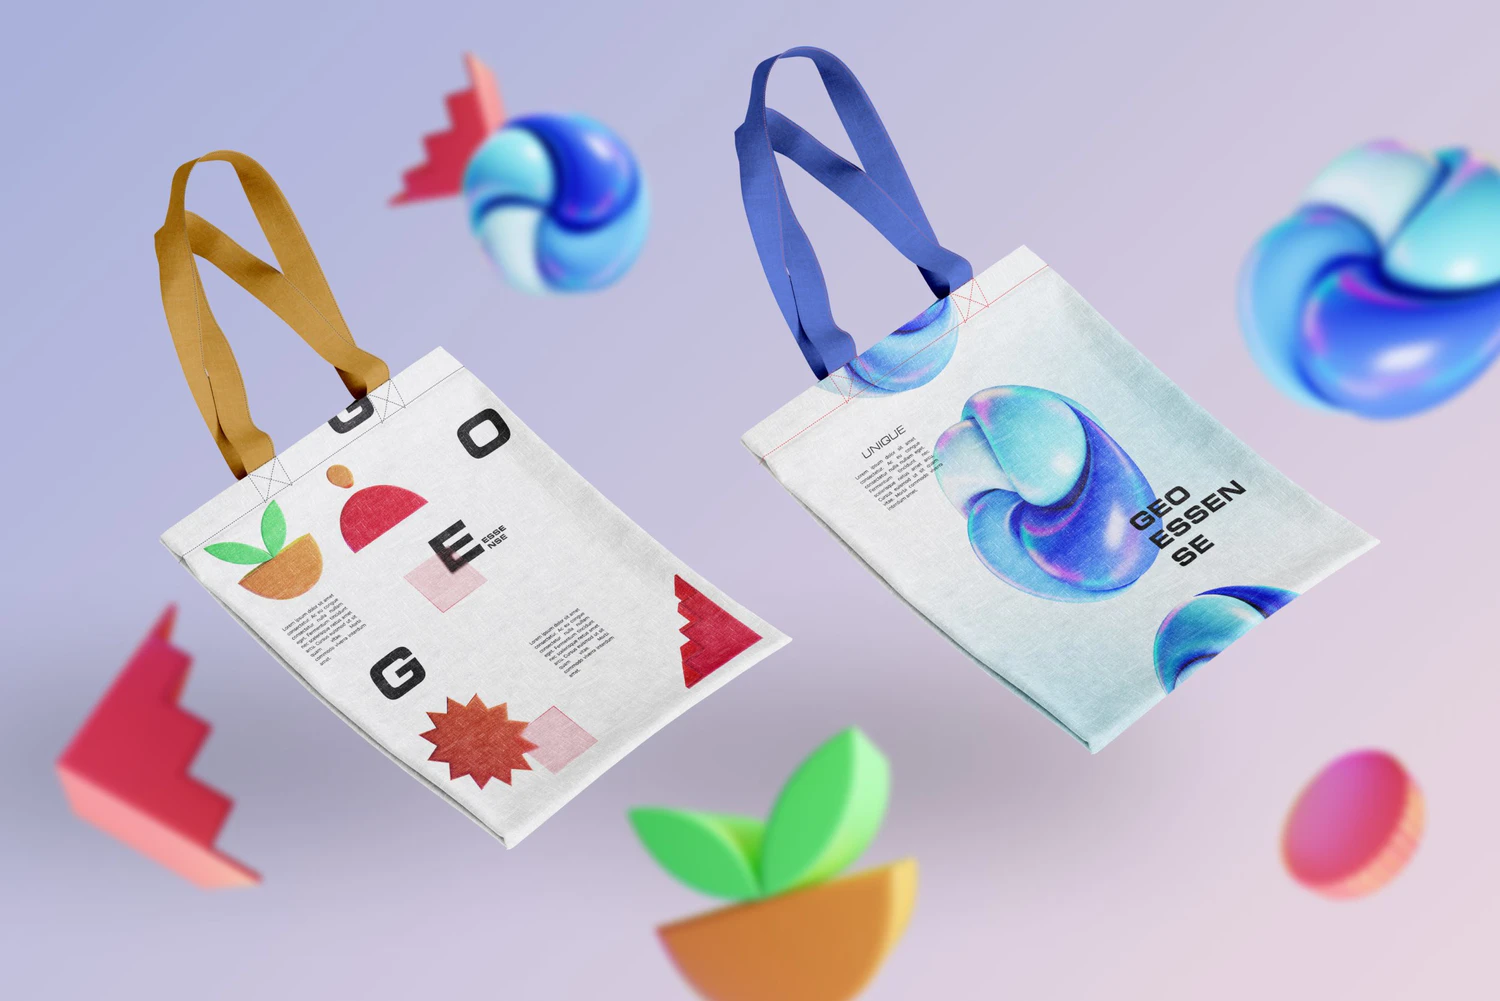 5220 抽象几何彩色图形元素海报封面网页社交媒体包装创意设计PNG透明背景素材 GEO 3D 220+ Colorful Objects@GOOODME.COM